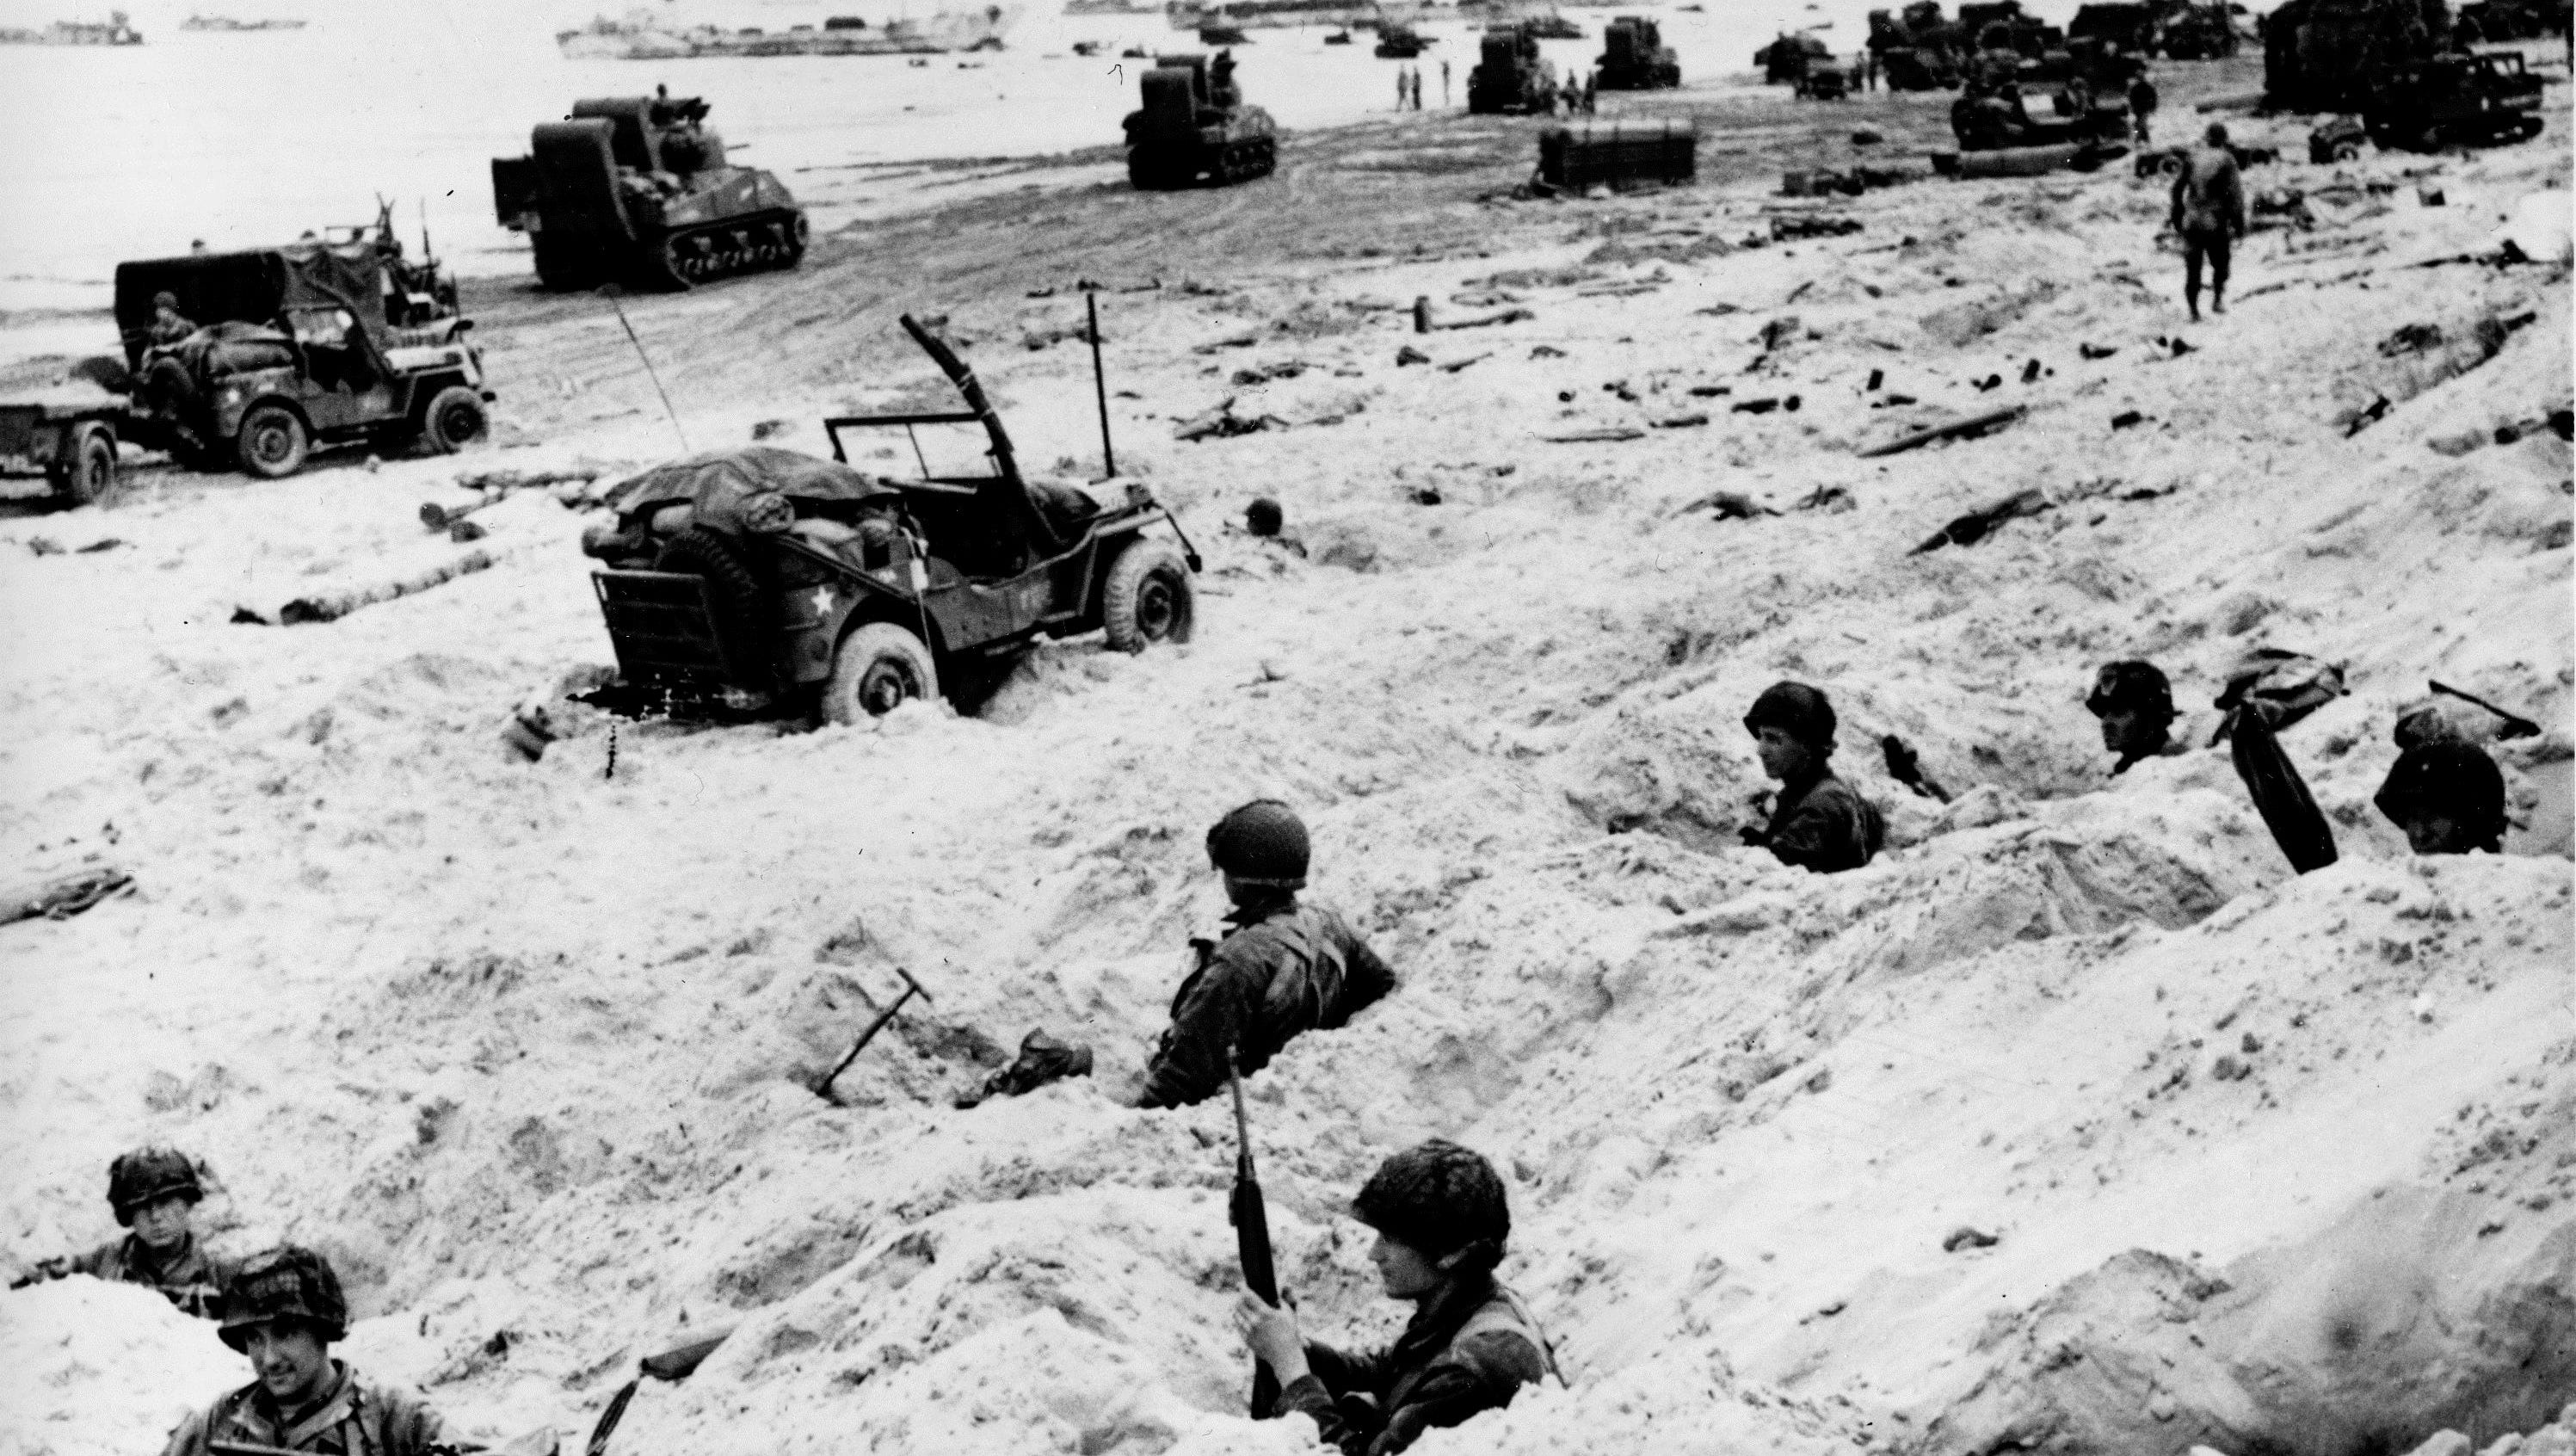 Высадка д. Высадка союзных войск в Нормандии в 1944. Высадка союзников в Нормандии 6 июня 1944 г. Нормандия 1944 высадка союзников. Нормандская десантная операция 1944.